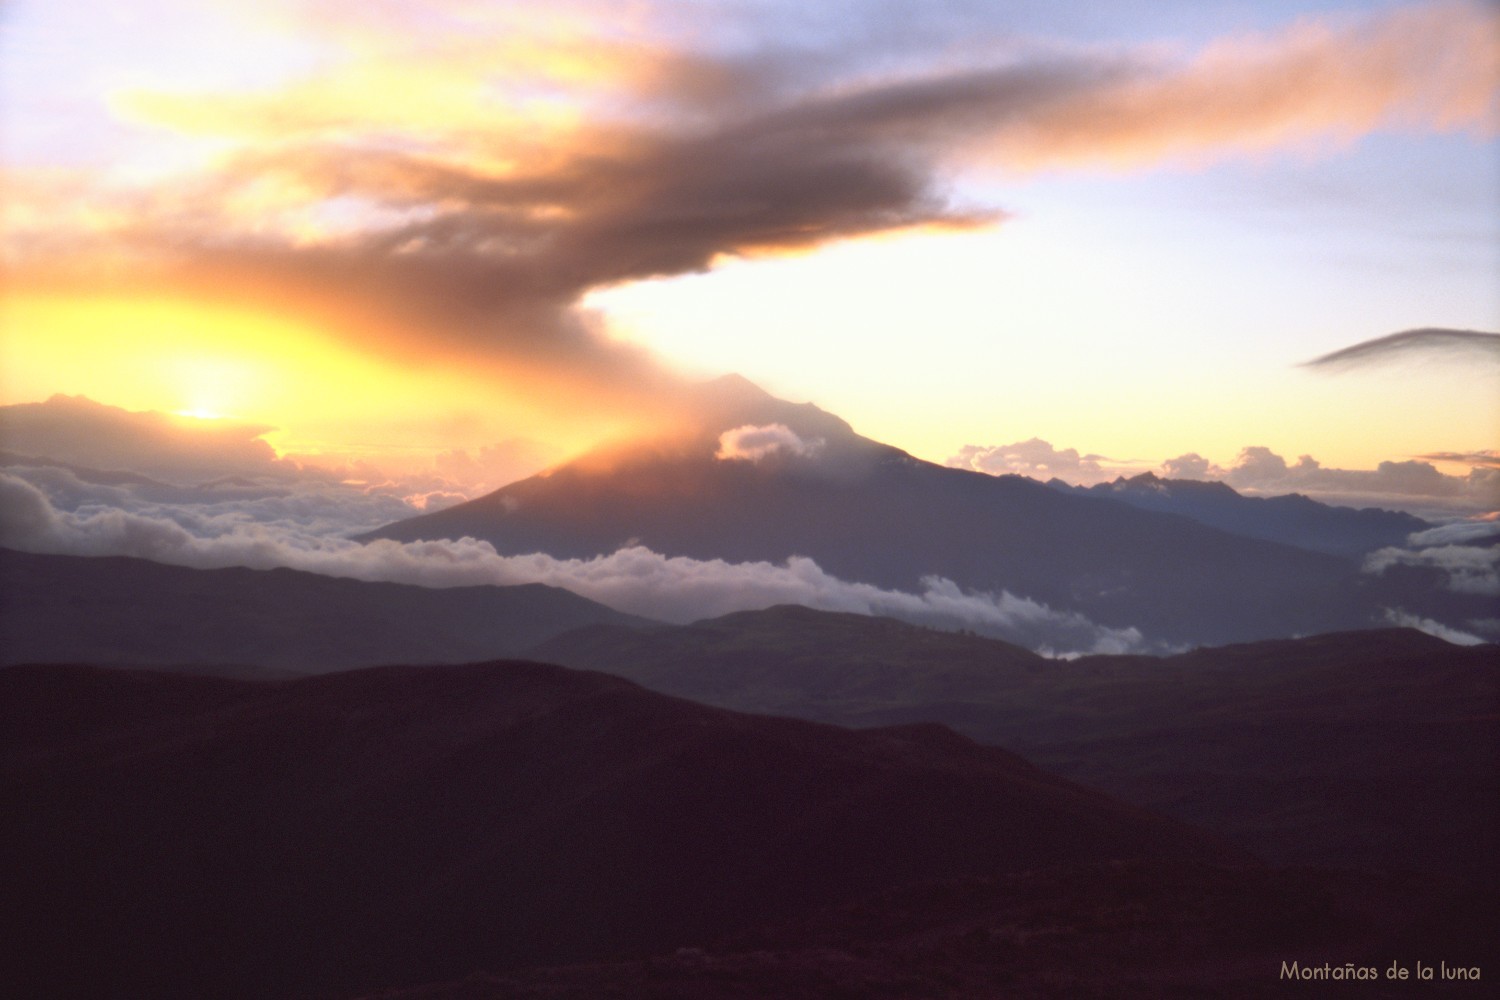 Amanece en el Volcán Tungurahua desde la cima del Igualata después de una gran erupción con su nube de cenizas y polvo volcánico